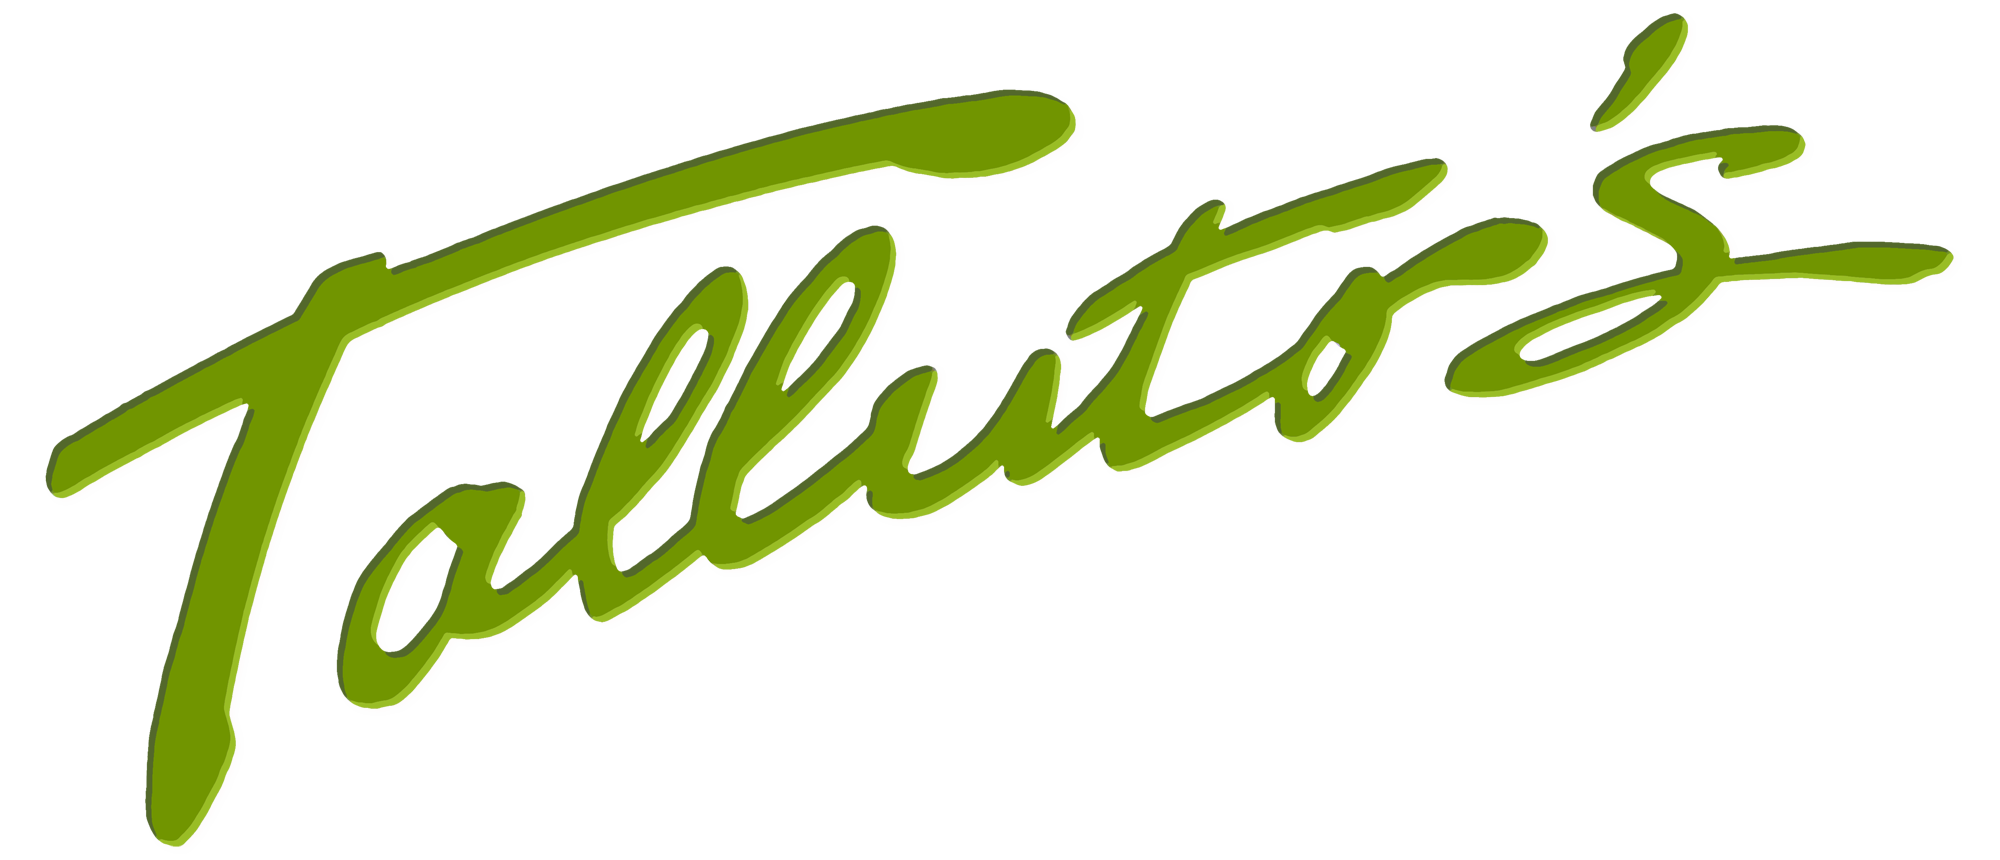 Talluto's logo